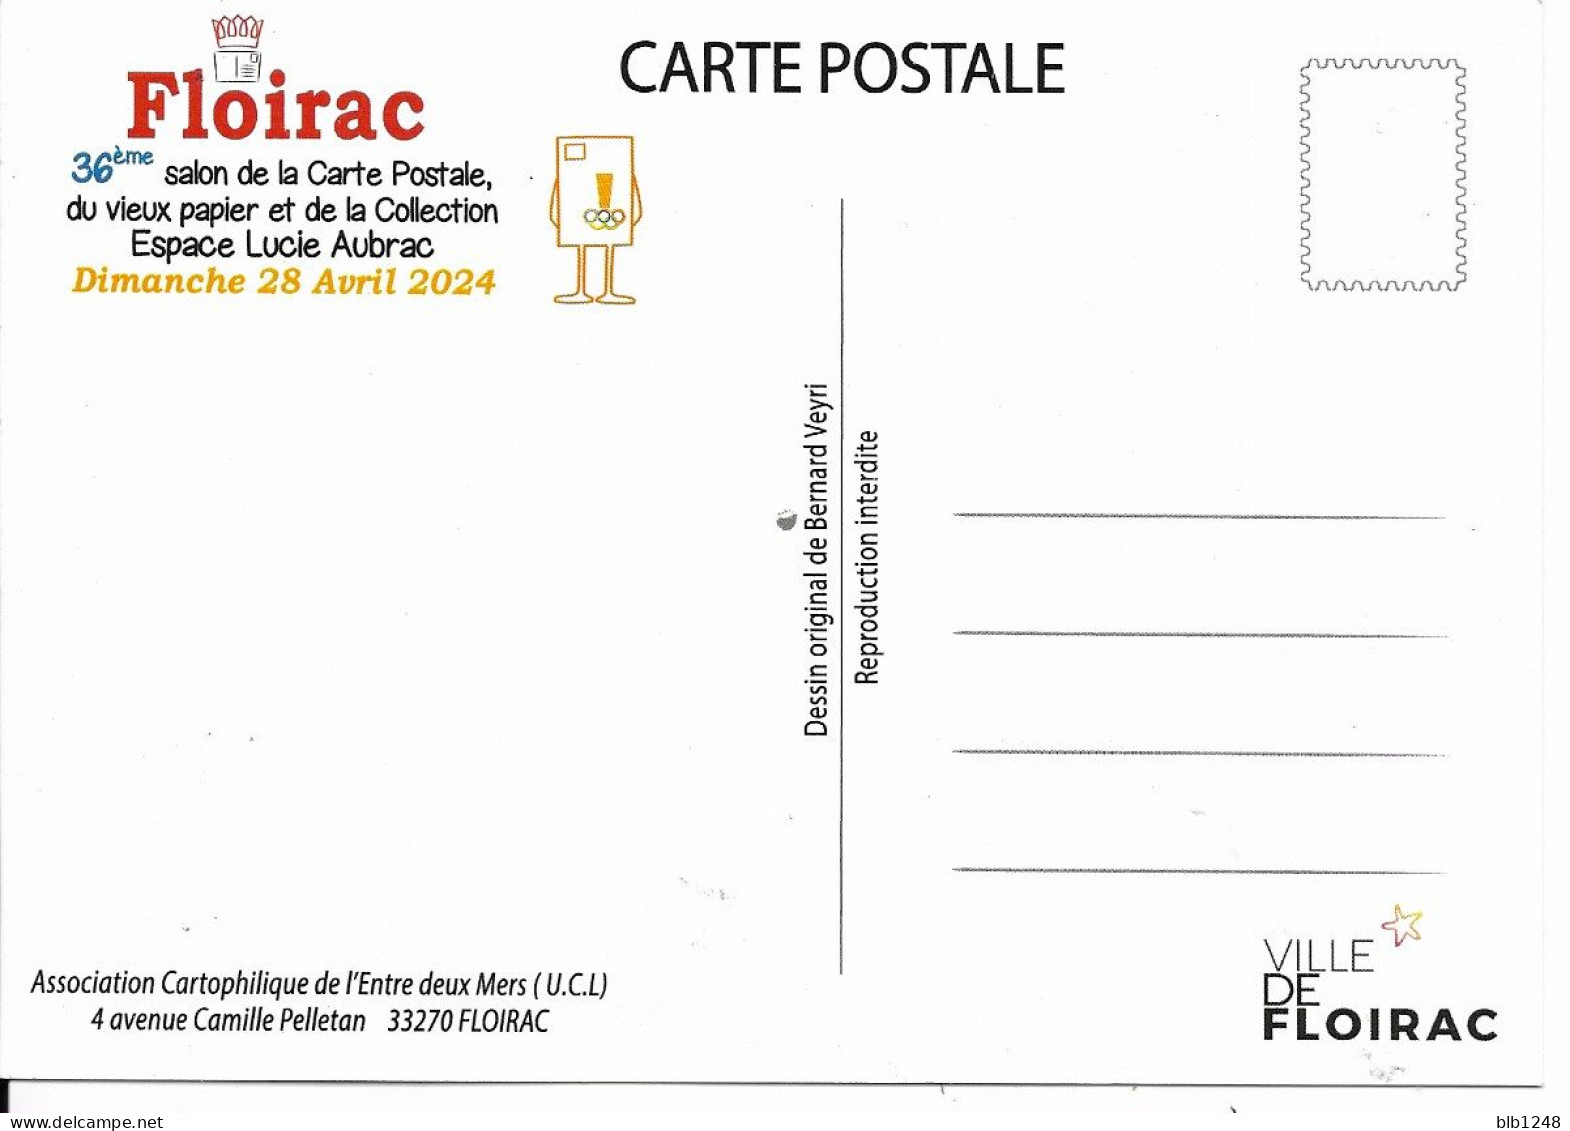 Bourses & Salons De Collections  Floirac 36eme Salon De La Carte Postale 2024 - Bourses & Salons De Collections